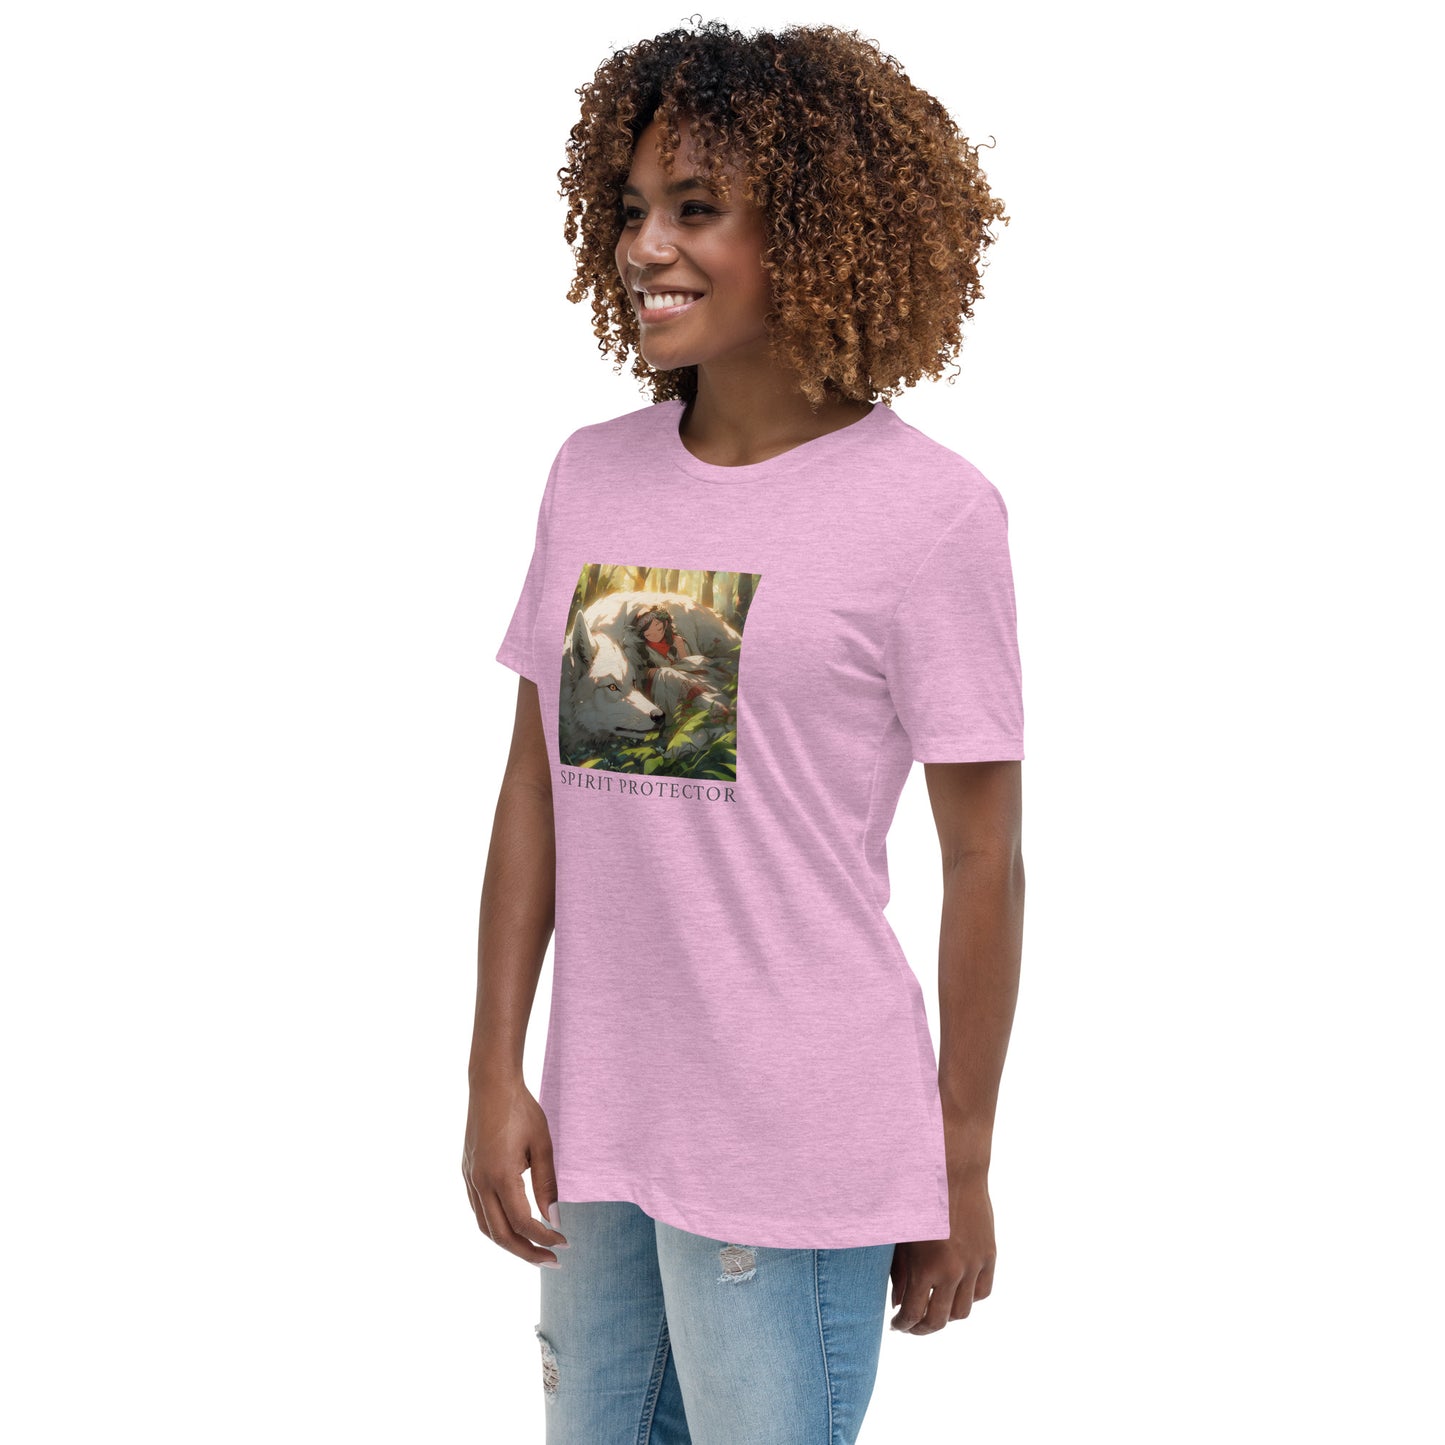 Spirit Protector Women's Relaxed T-Shirt